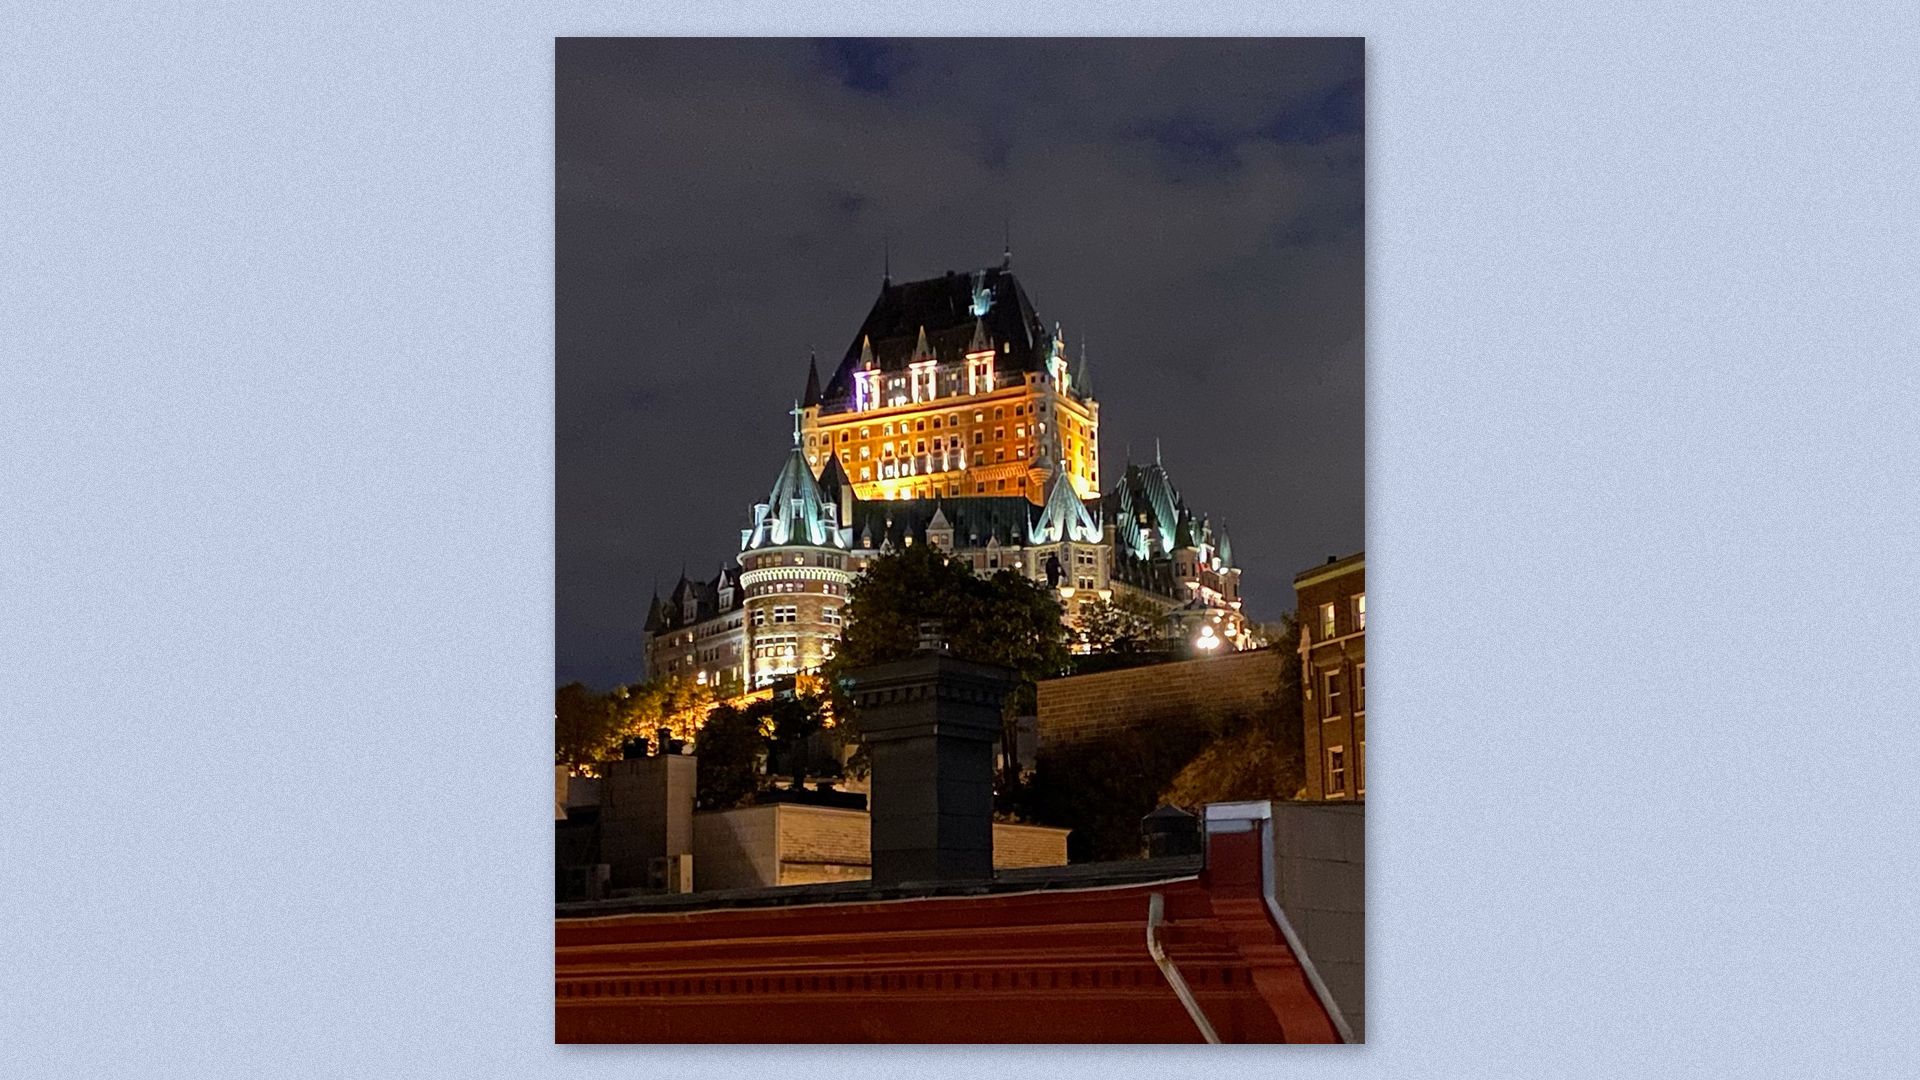 The Fairmont Le Château Frontenac hotel in Quebec City.